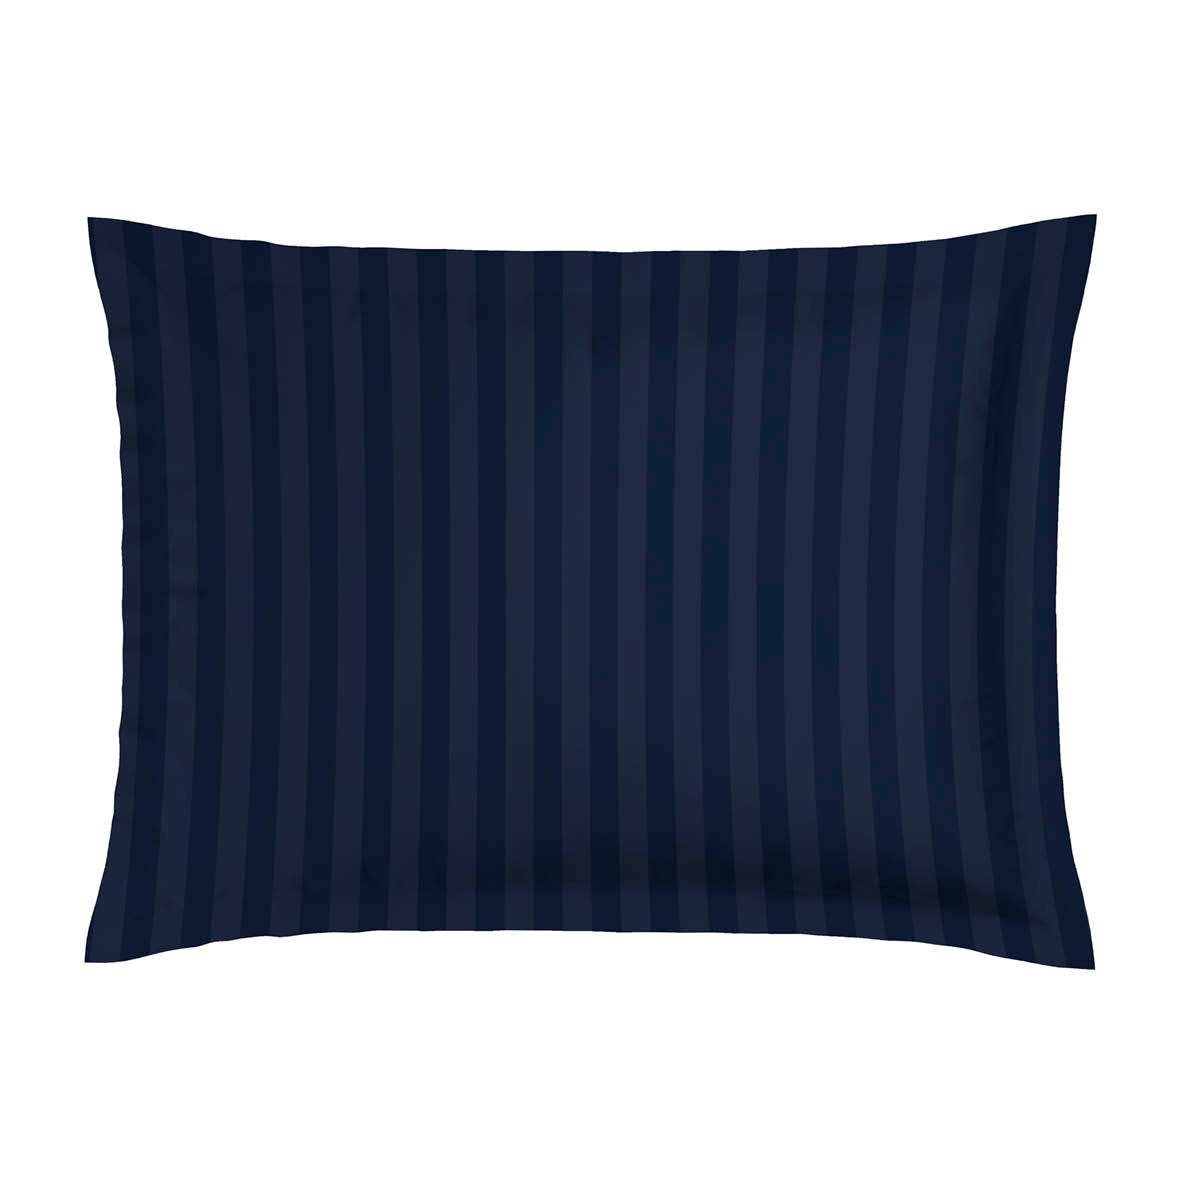 Pillowcase(s) cotton satin - Bouquet de nuit dark blue